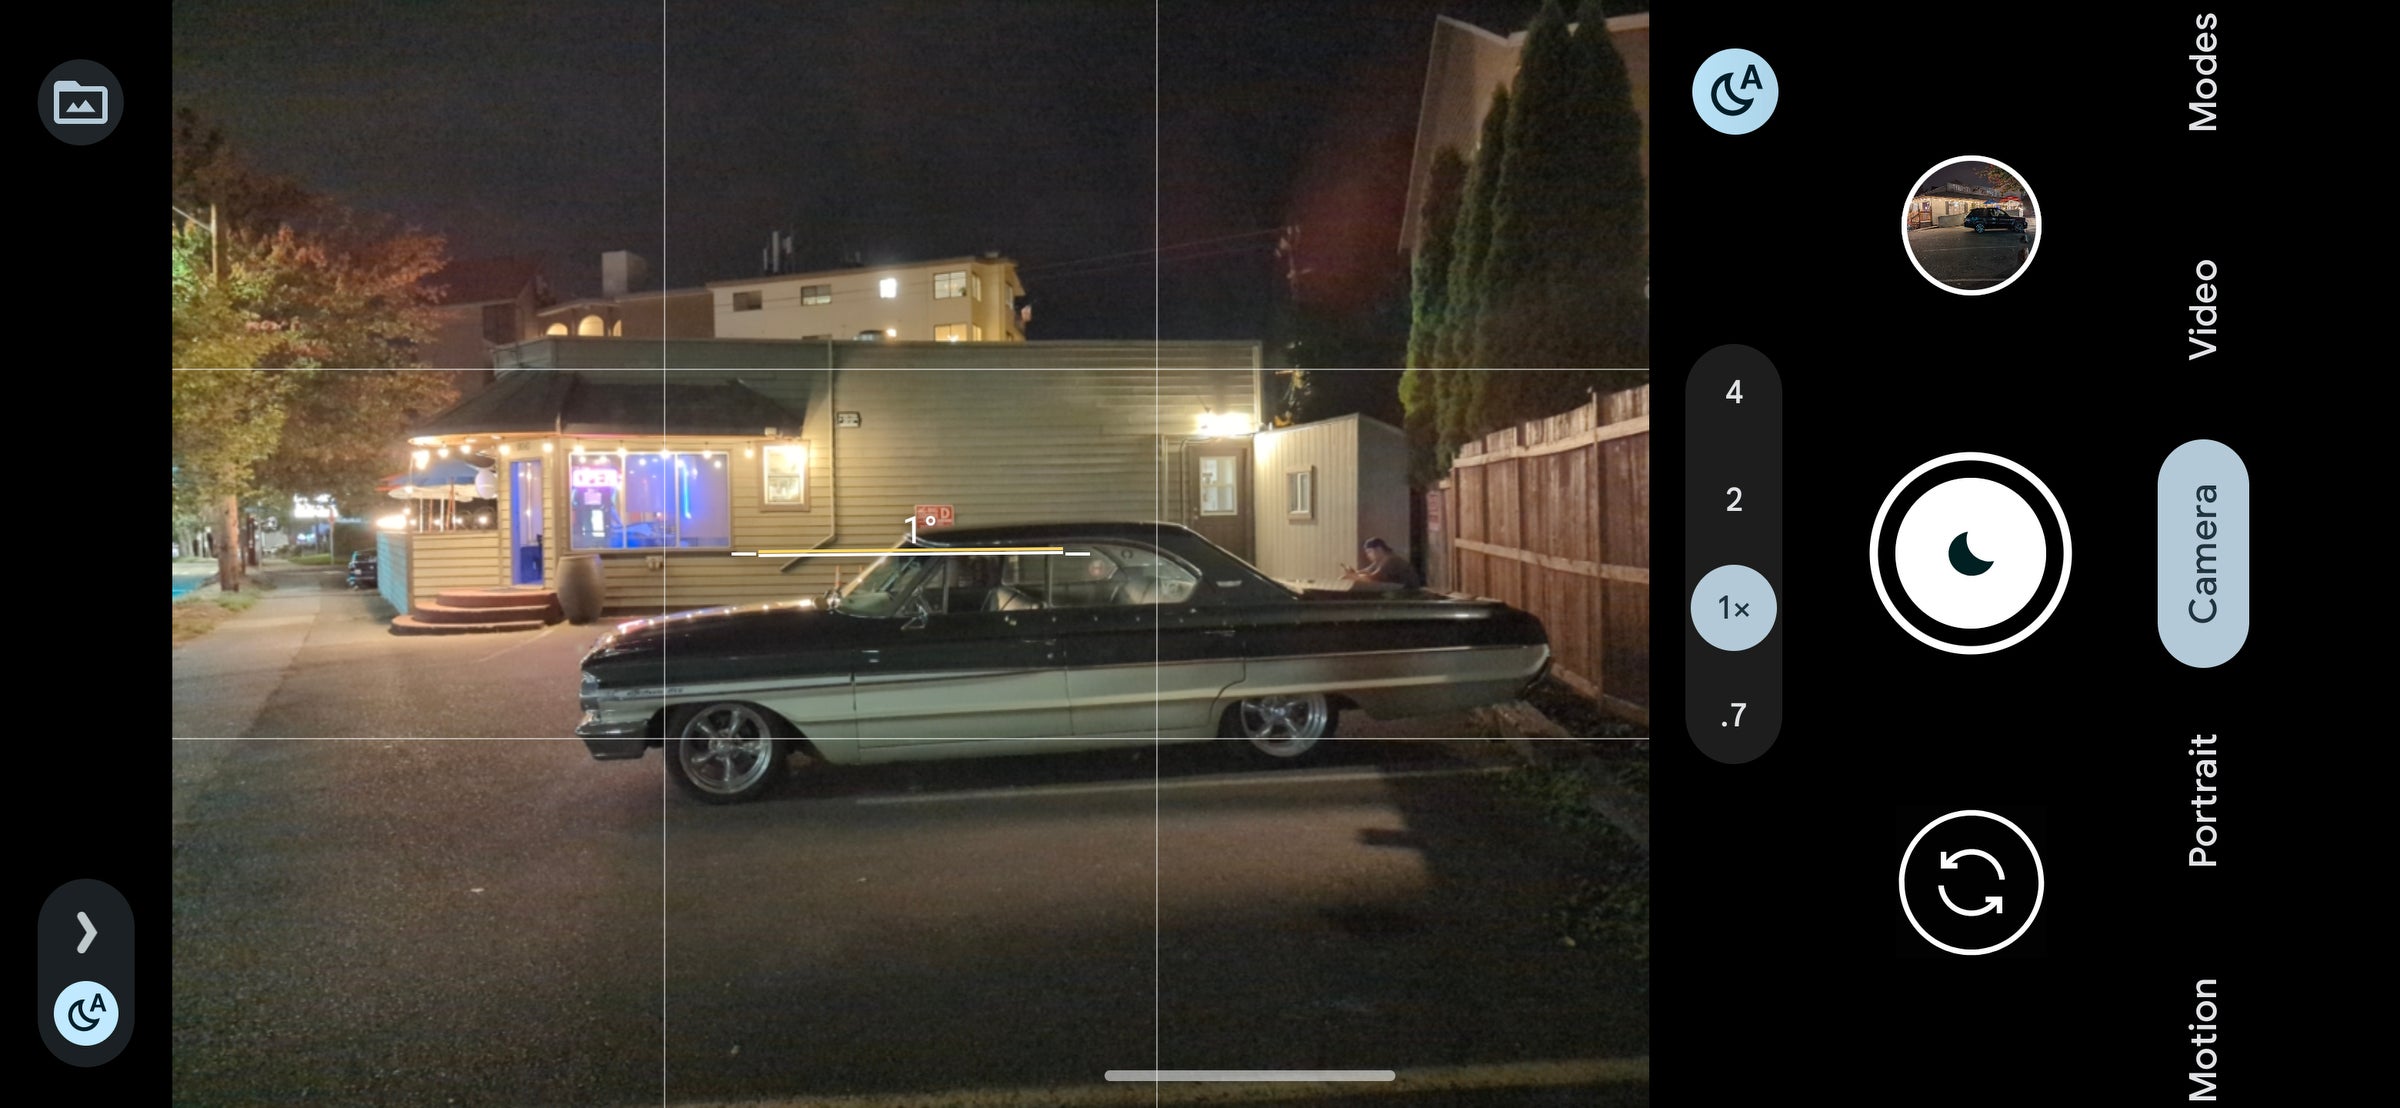 Une scène de nuit faiblement éclairée avec une vieille voiture.